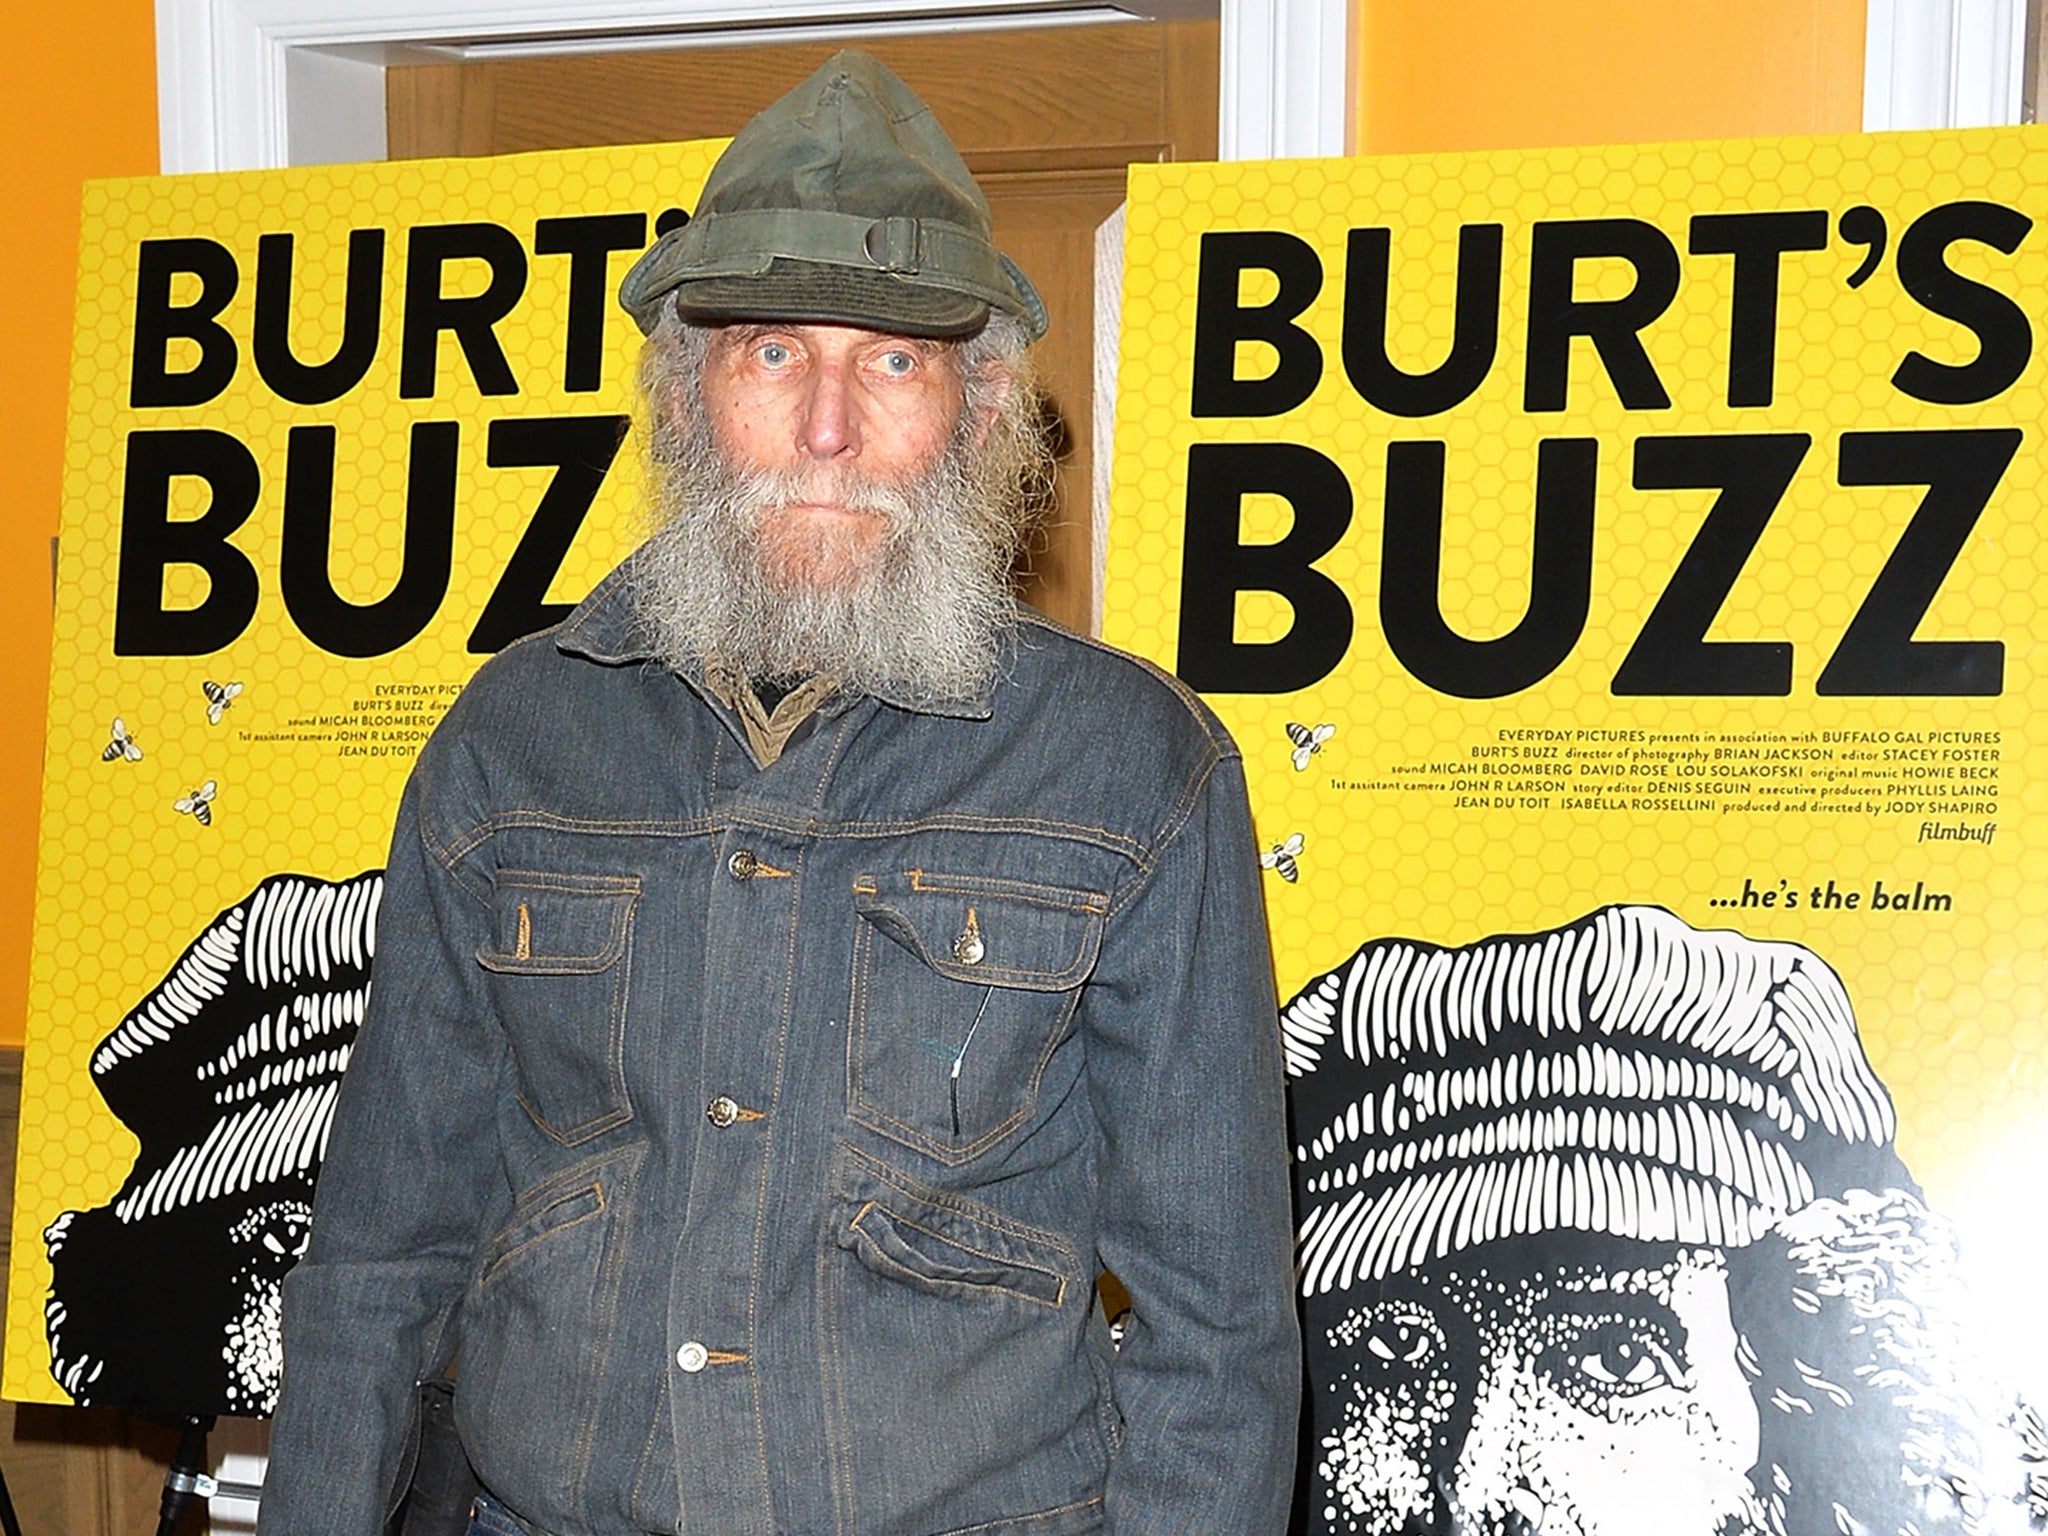 Burt's Bees co-founder Burt Shavitz